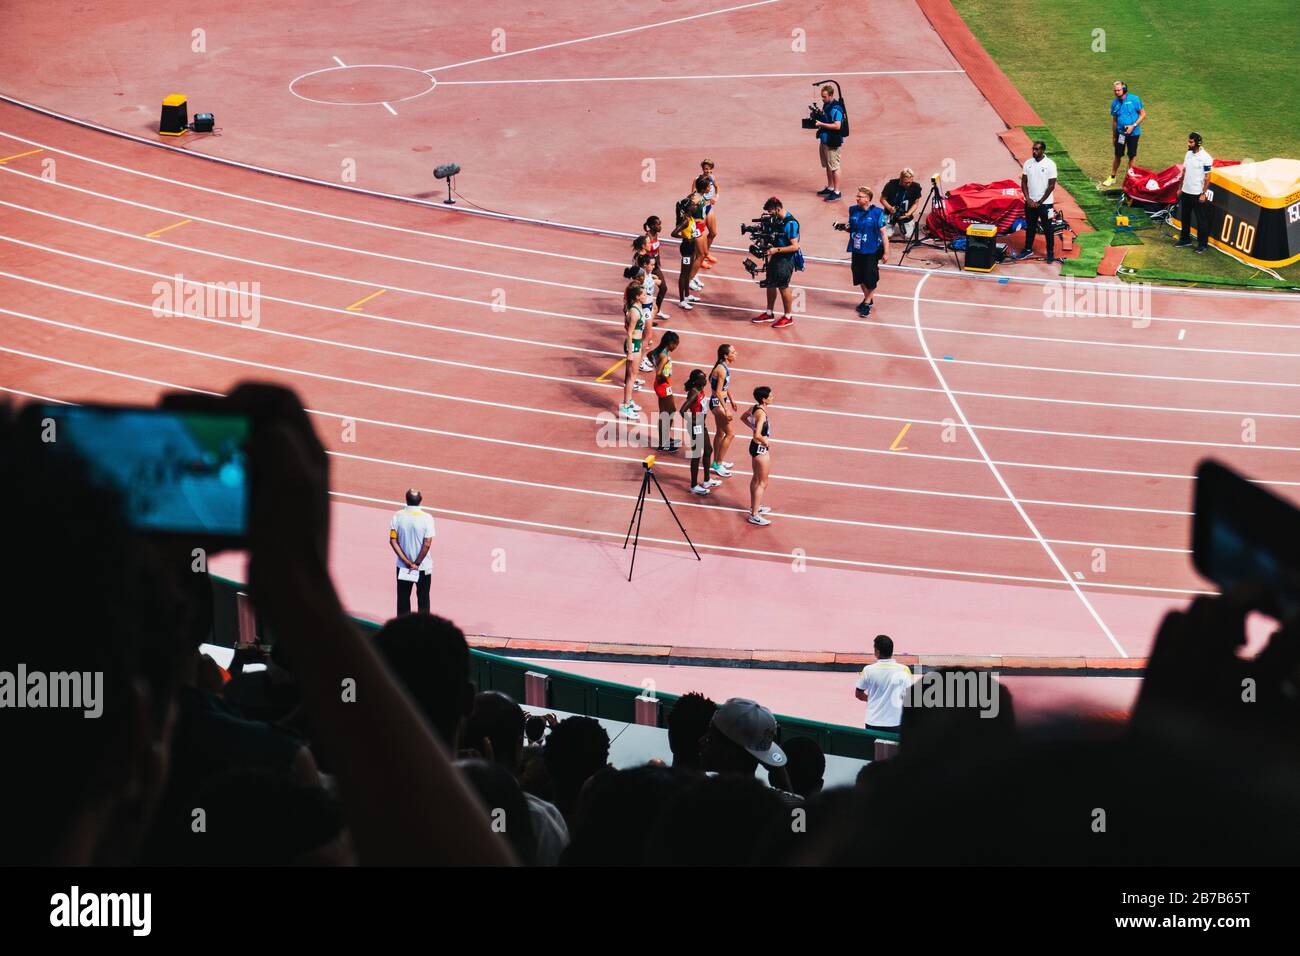 Athlètes participant aux Championnats du monde d'athlétisme de l'IAAF 2019 au stade international de Khalifa, Doha, Qatar Banque D'Images